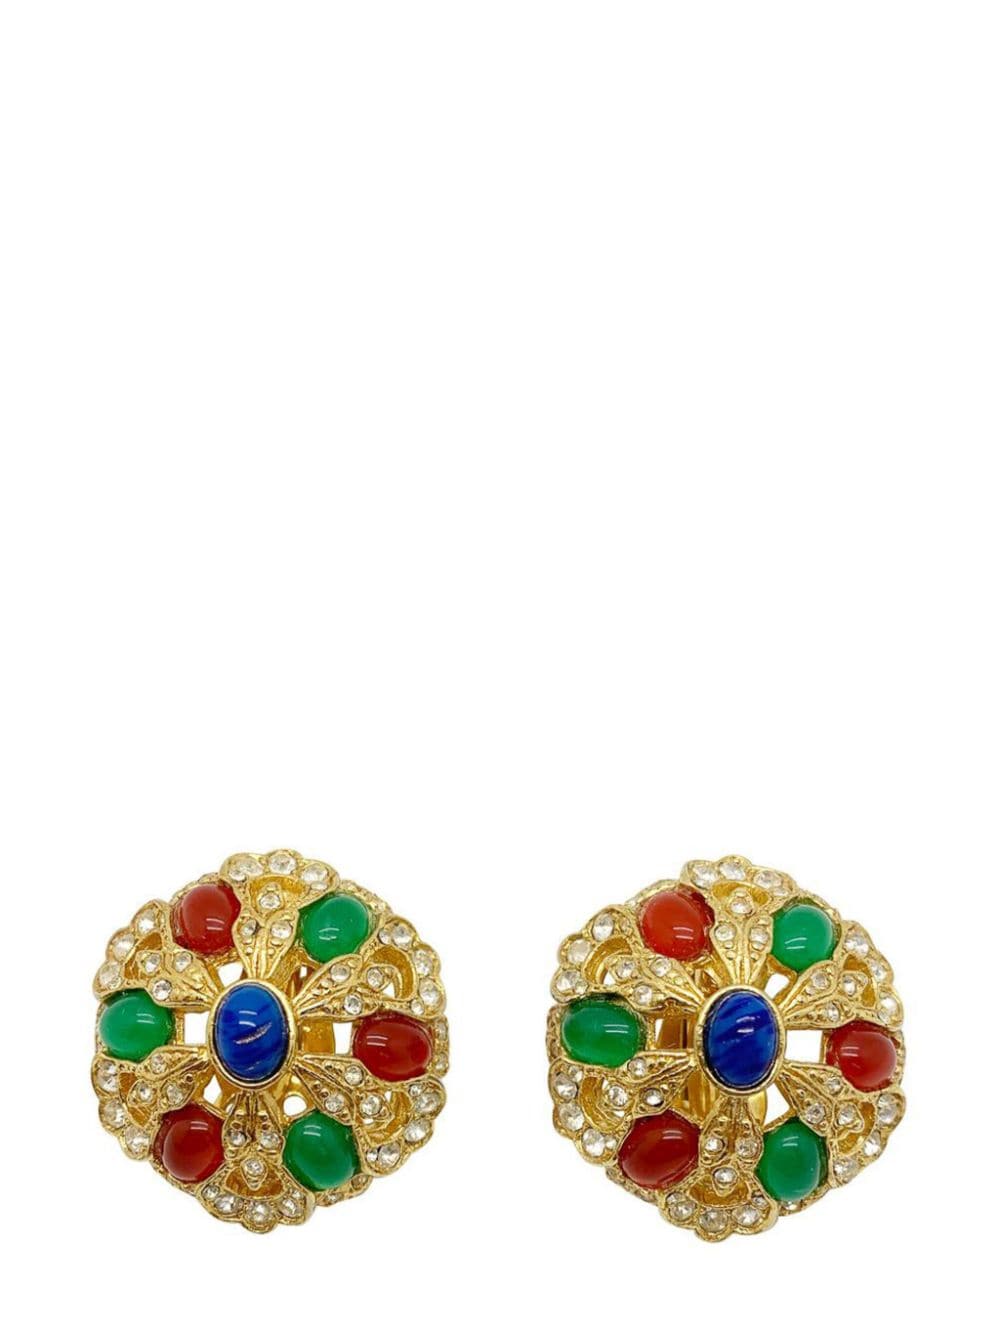 Jennifer Gibson Jewellery Vintage Jewelled Cabochon Earrings 1970s - Gold von Jennifer Gibson Jewellery